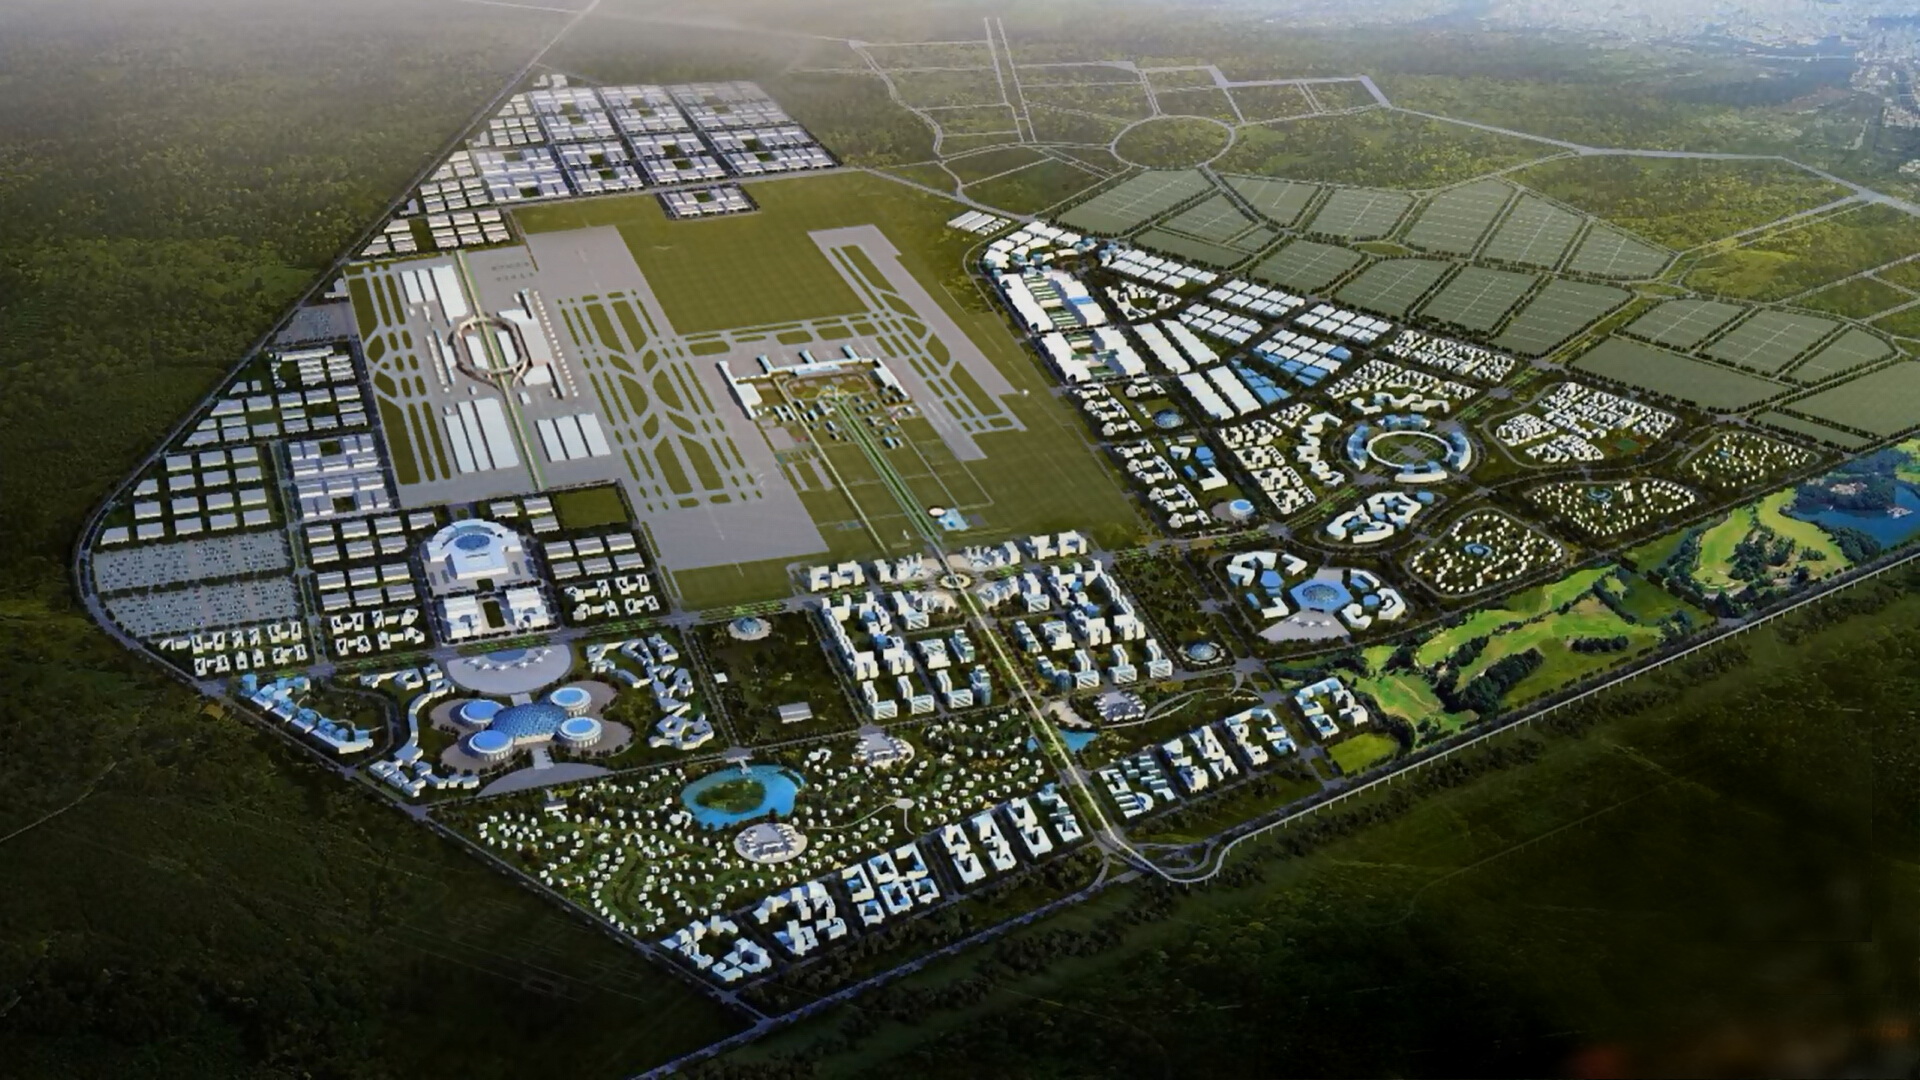 安哥拉罗安达新机场航空城平面规划图(luanka new airport